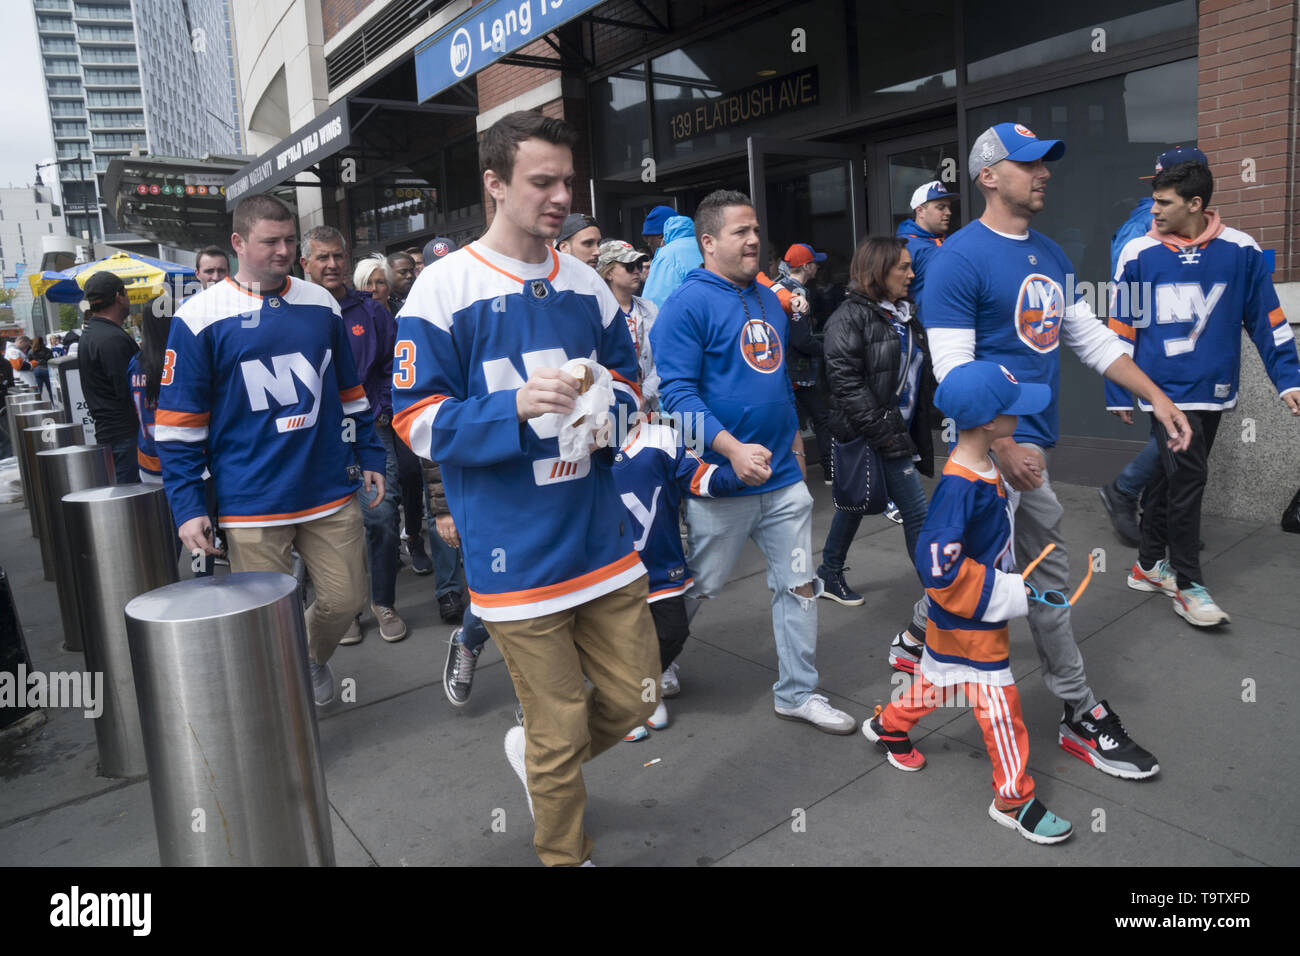 Les fans des New York Rangers dévoués marchent de la station LIRR aux éliminatoires de la coupe Stanley au Barklays Center de Brooklyn, New York. Banque D'Images